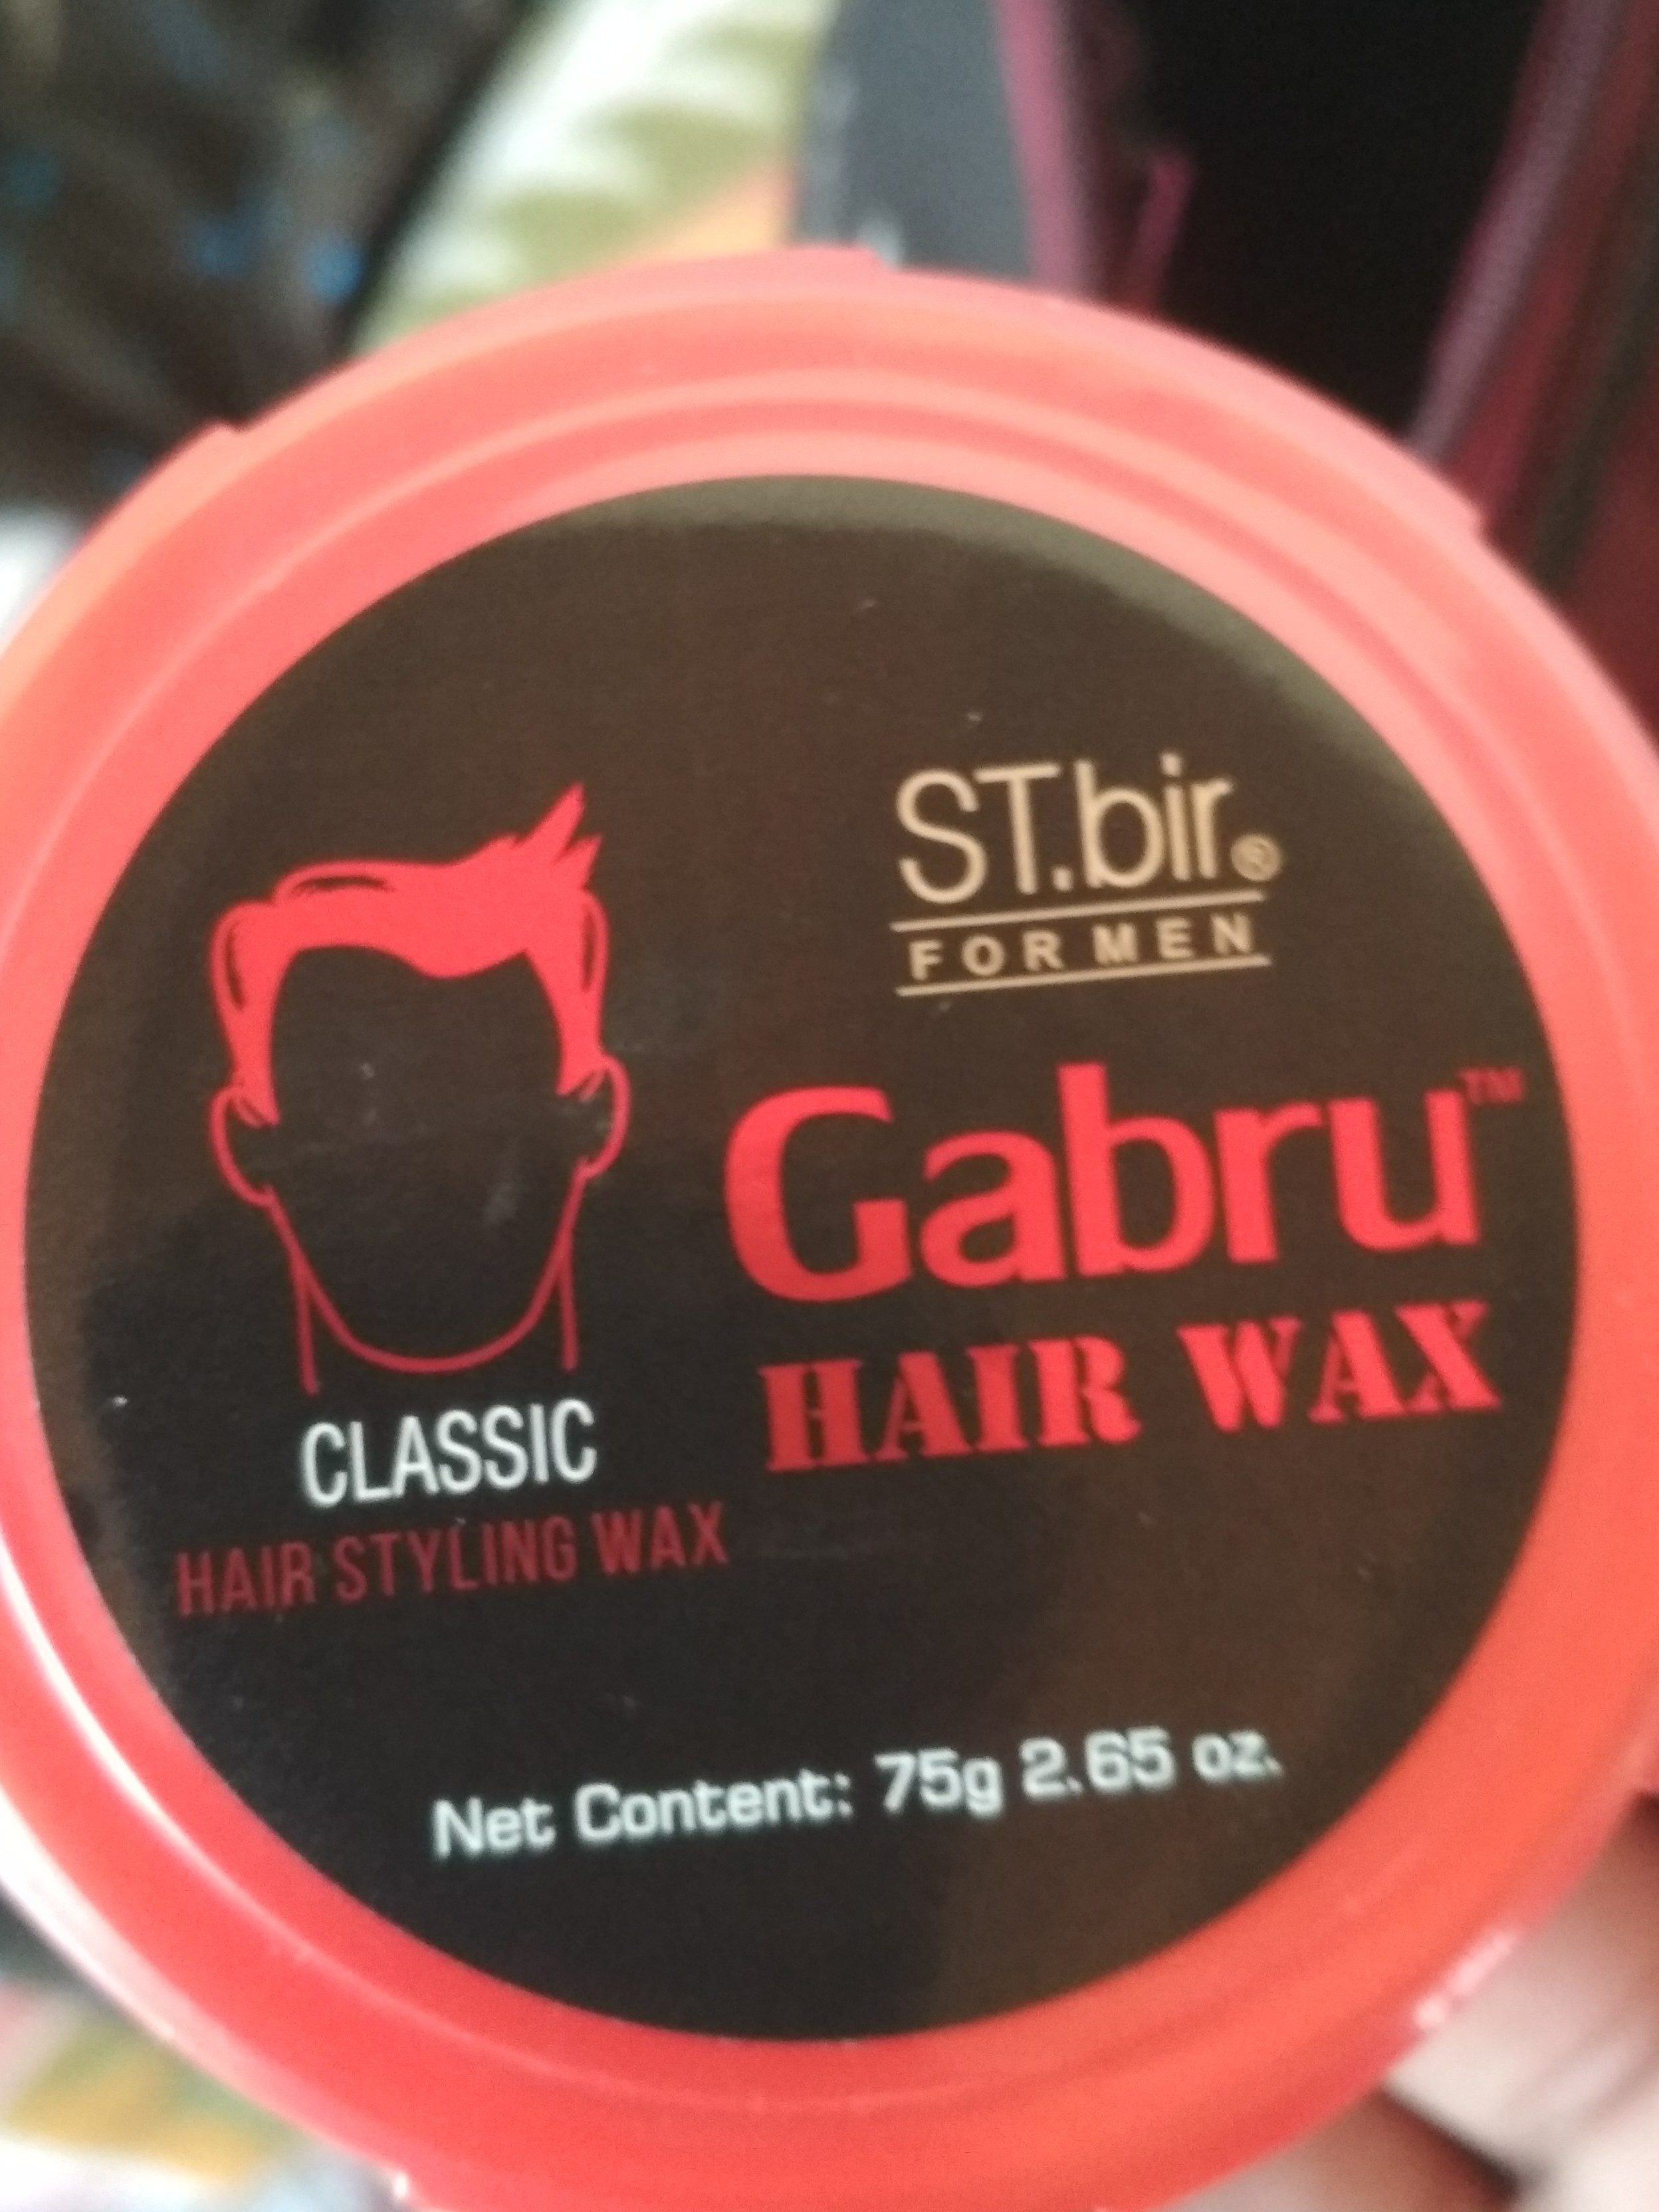 Gabru hair wax - Product - en